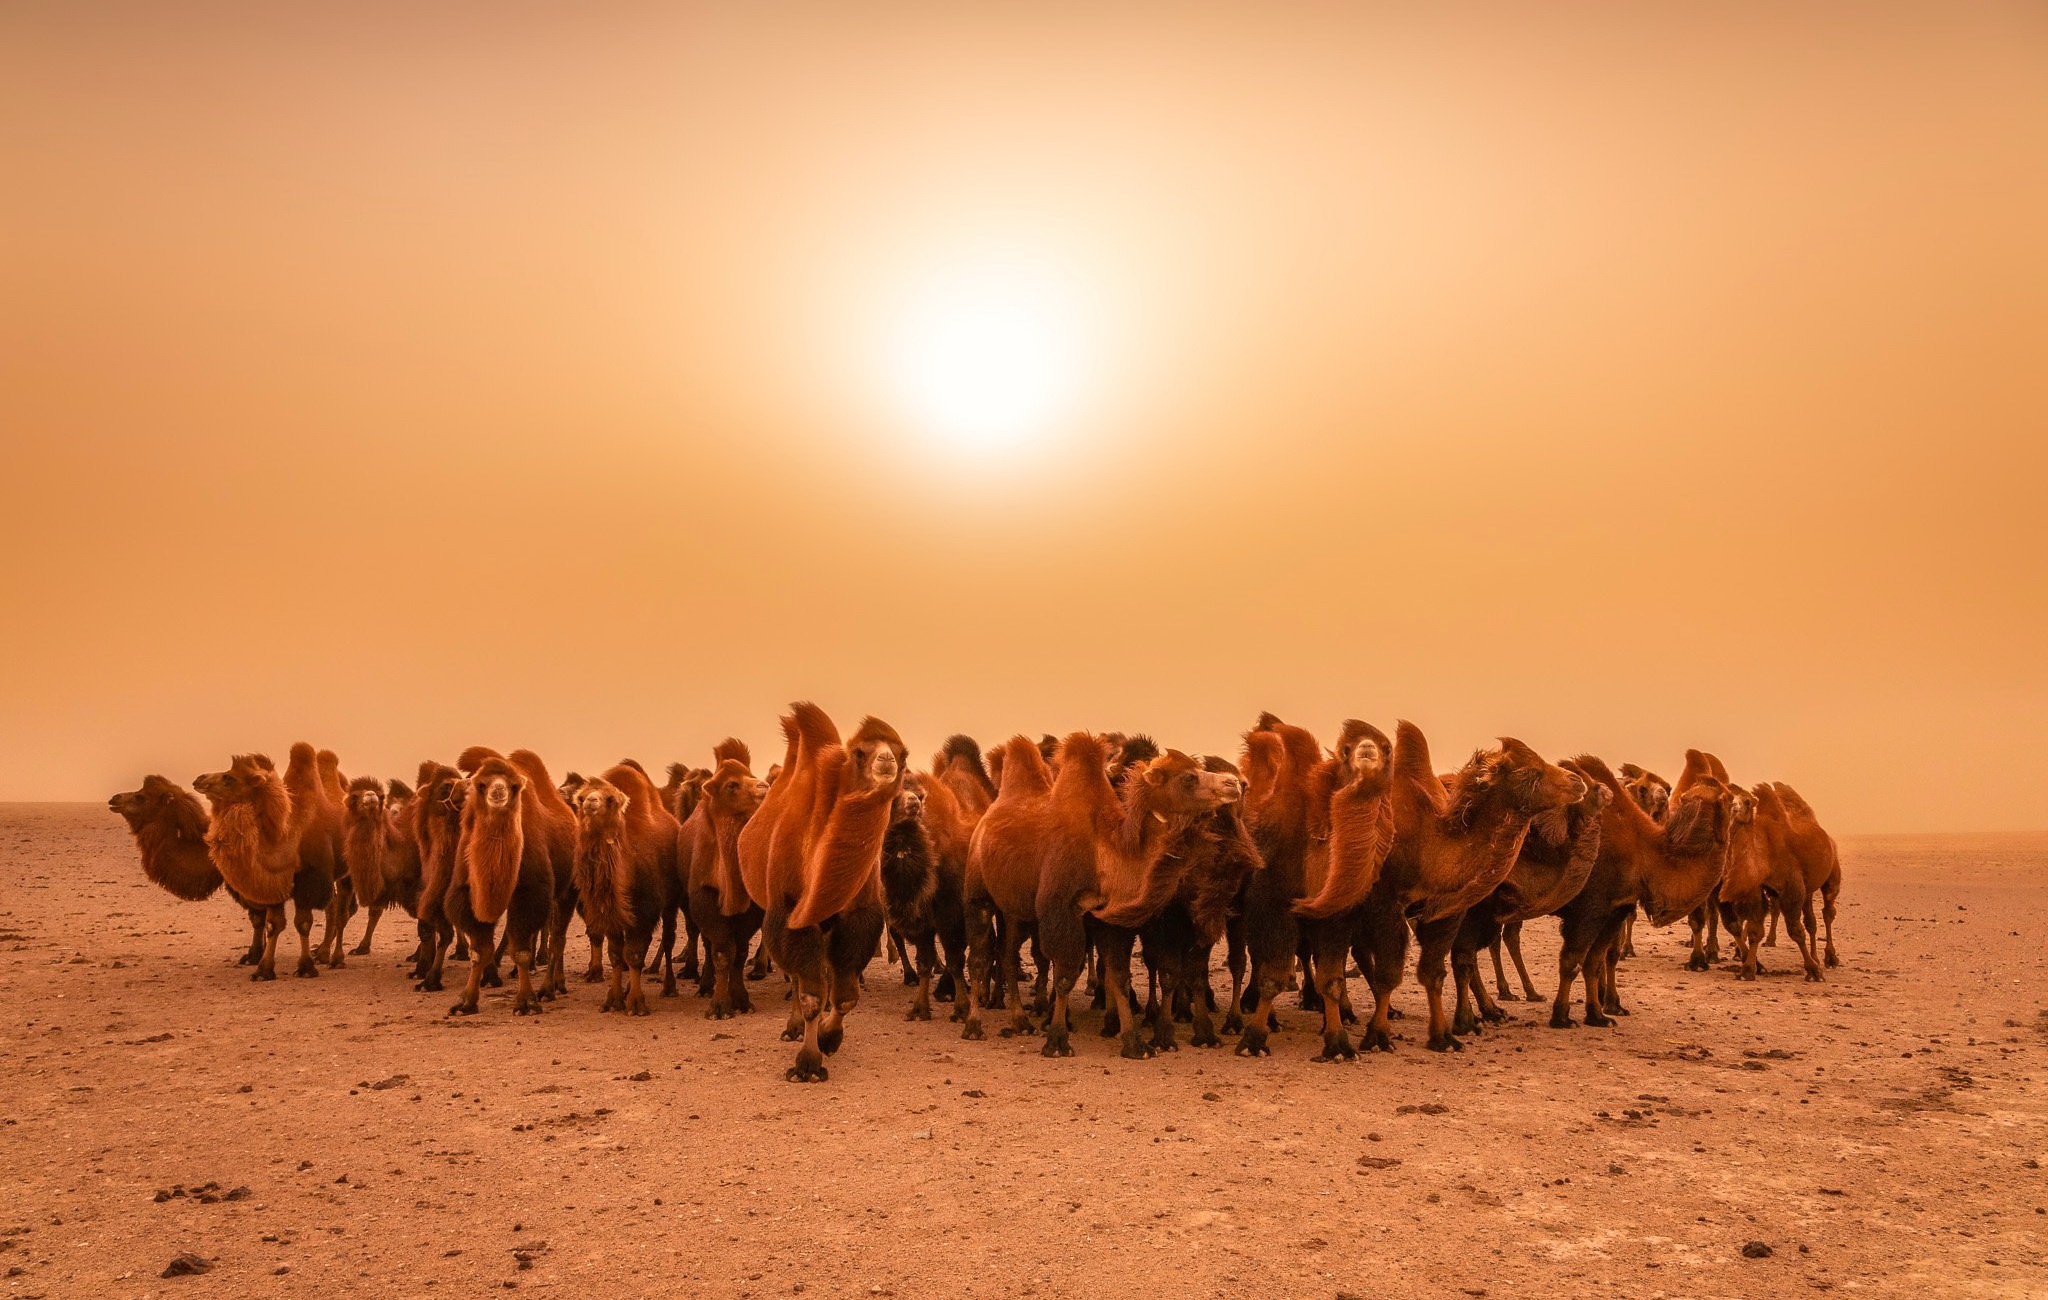 Download mobile wallpaper Desert, Animal, Camel for free.